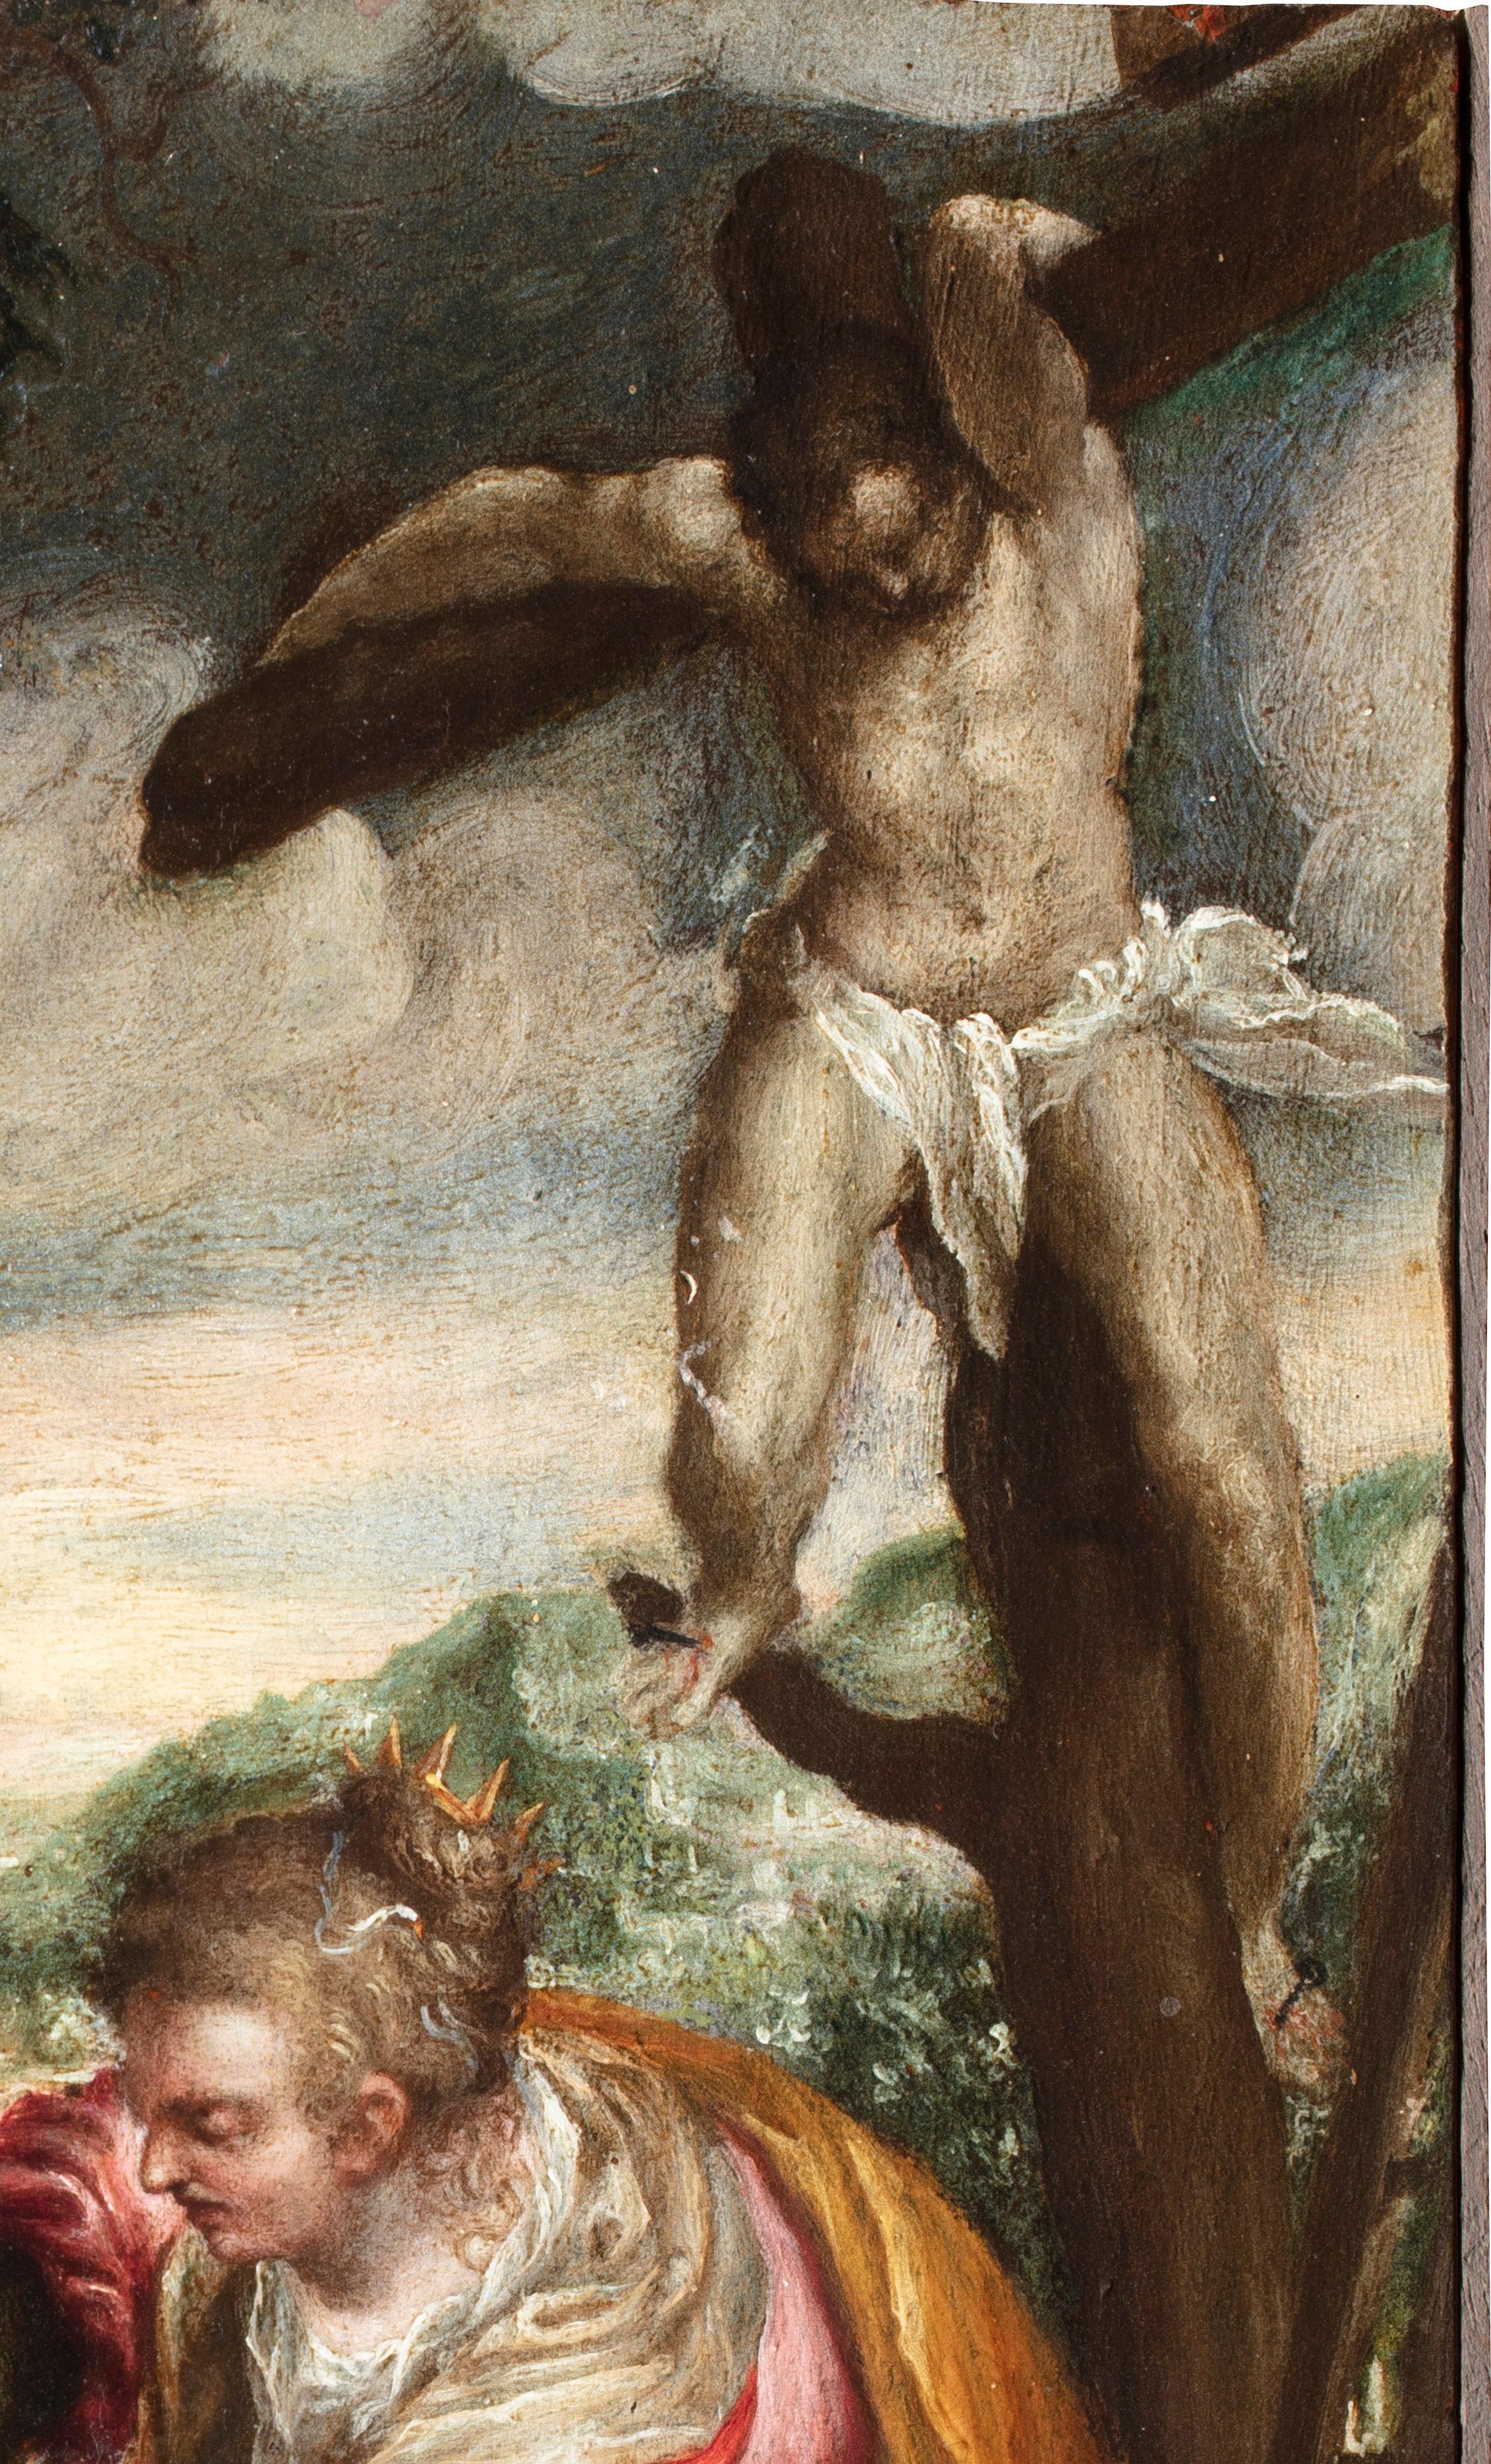 Venezianische Maestro-Deposition des Christus, Ölgemälde auf Tafel, 16. Jahrhundert  (Alte Meister), Painting, von Venetian Maestro from the second half of the 16th century